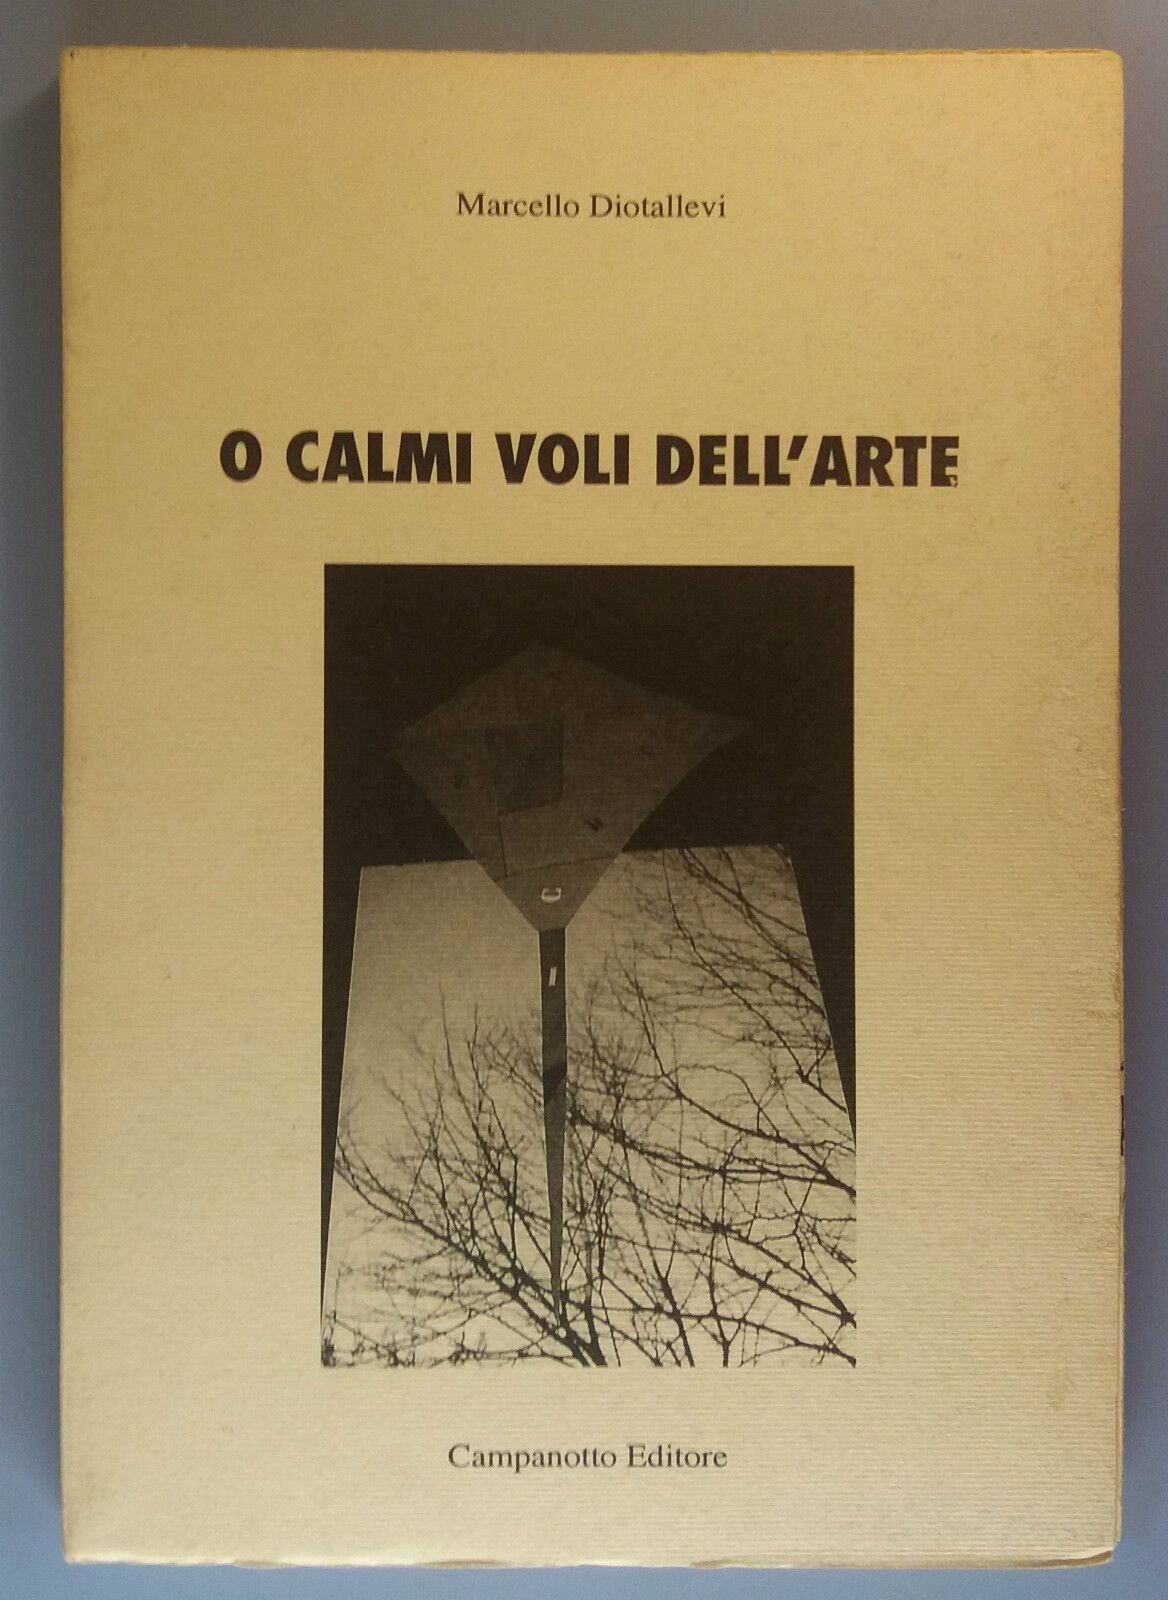 O calmi voli dell'arte - Marcello Diotallevi - Campanotto Editore - 2001 - G